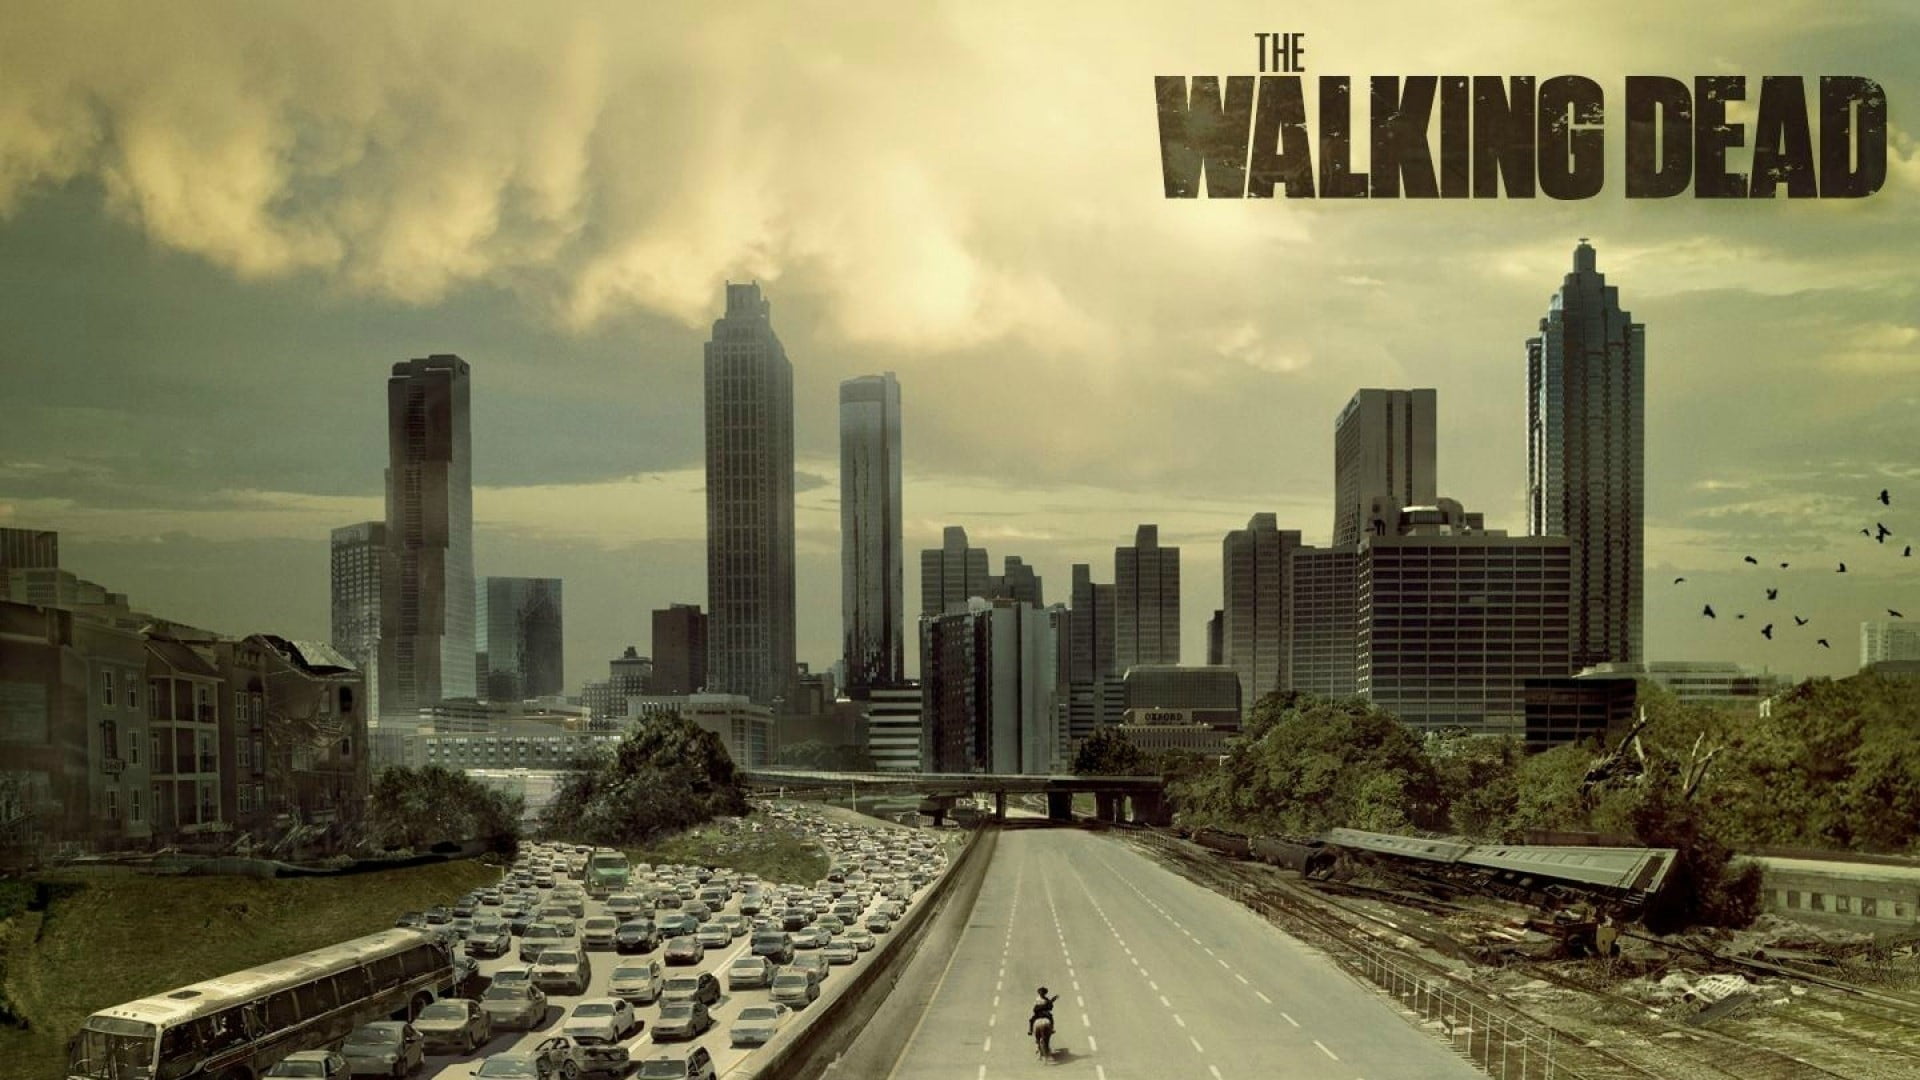 The Walking Dead poster, The Walking Dead HD wallpaper | Wallpaper ...